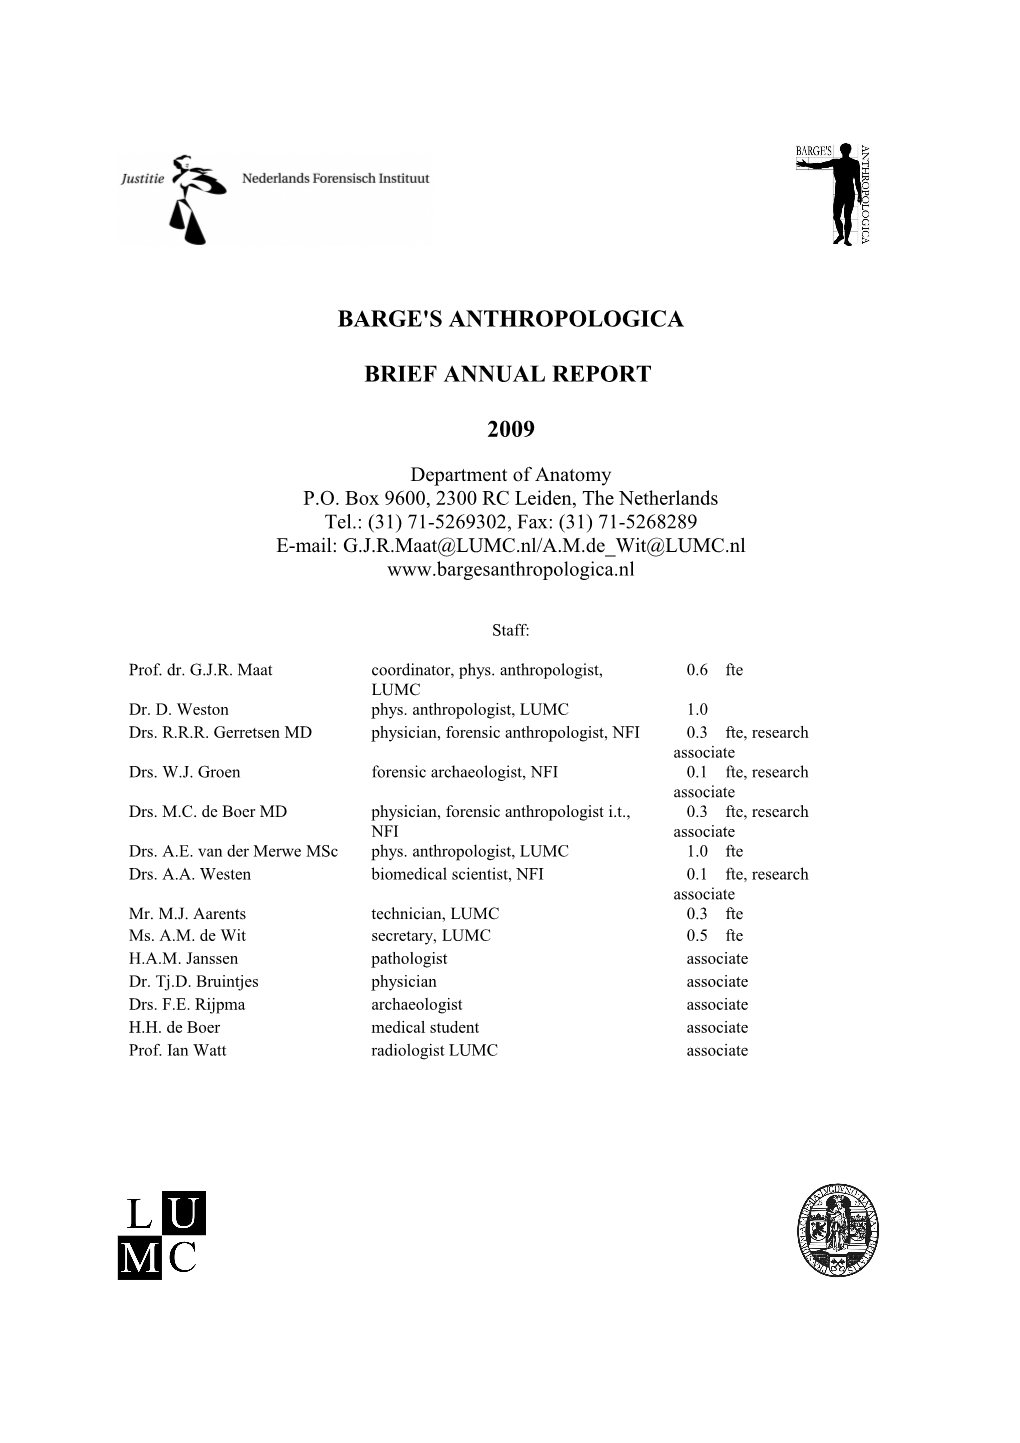 Brief Annual Report 1998